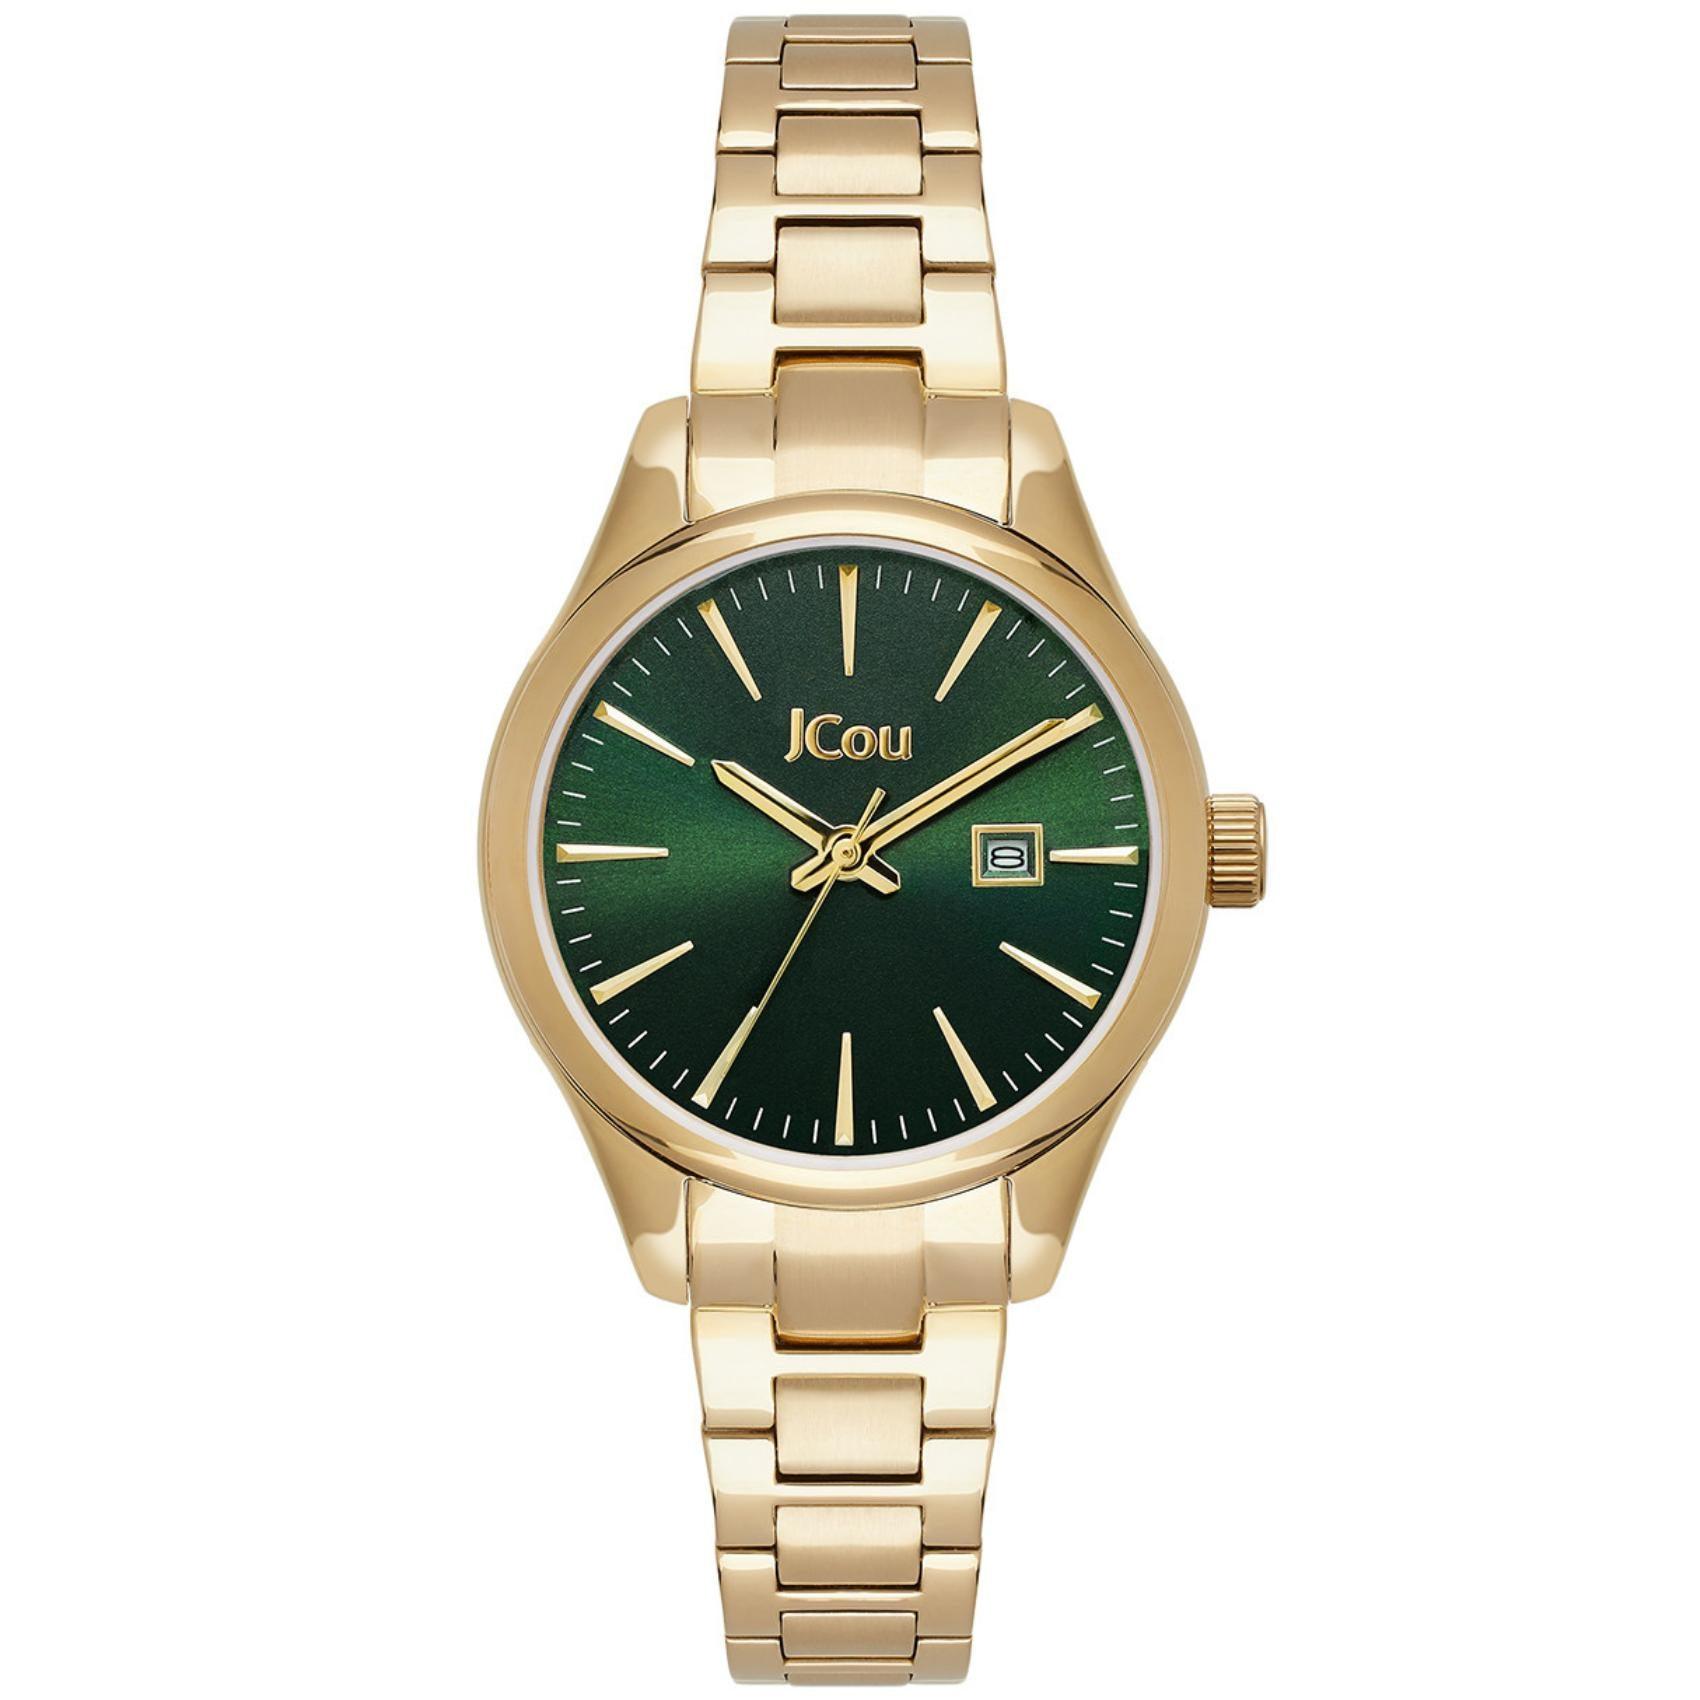 Γυναικείο ρολόι JCOU Aphordite JU19051-6 με χρυσό ατσάλινο μπρασελέ και πράσινο καντράν 32mm με ημερομηνία.